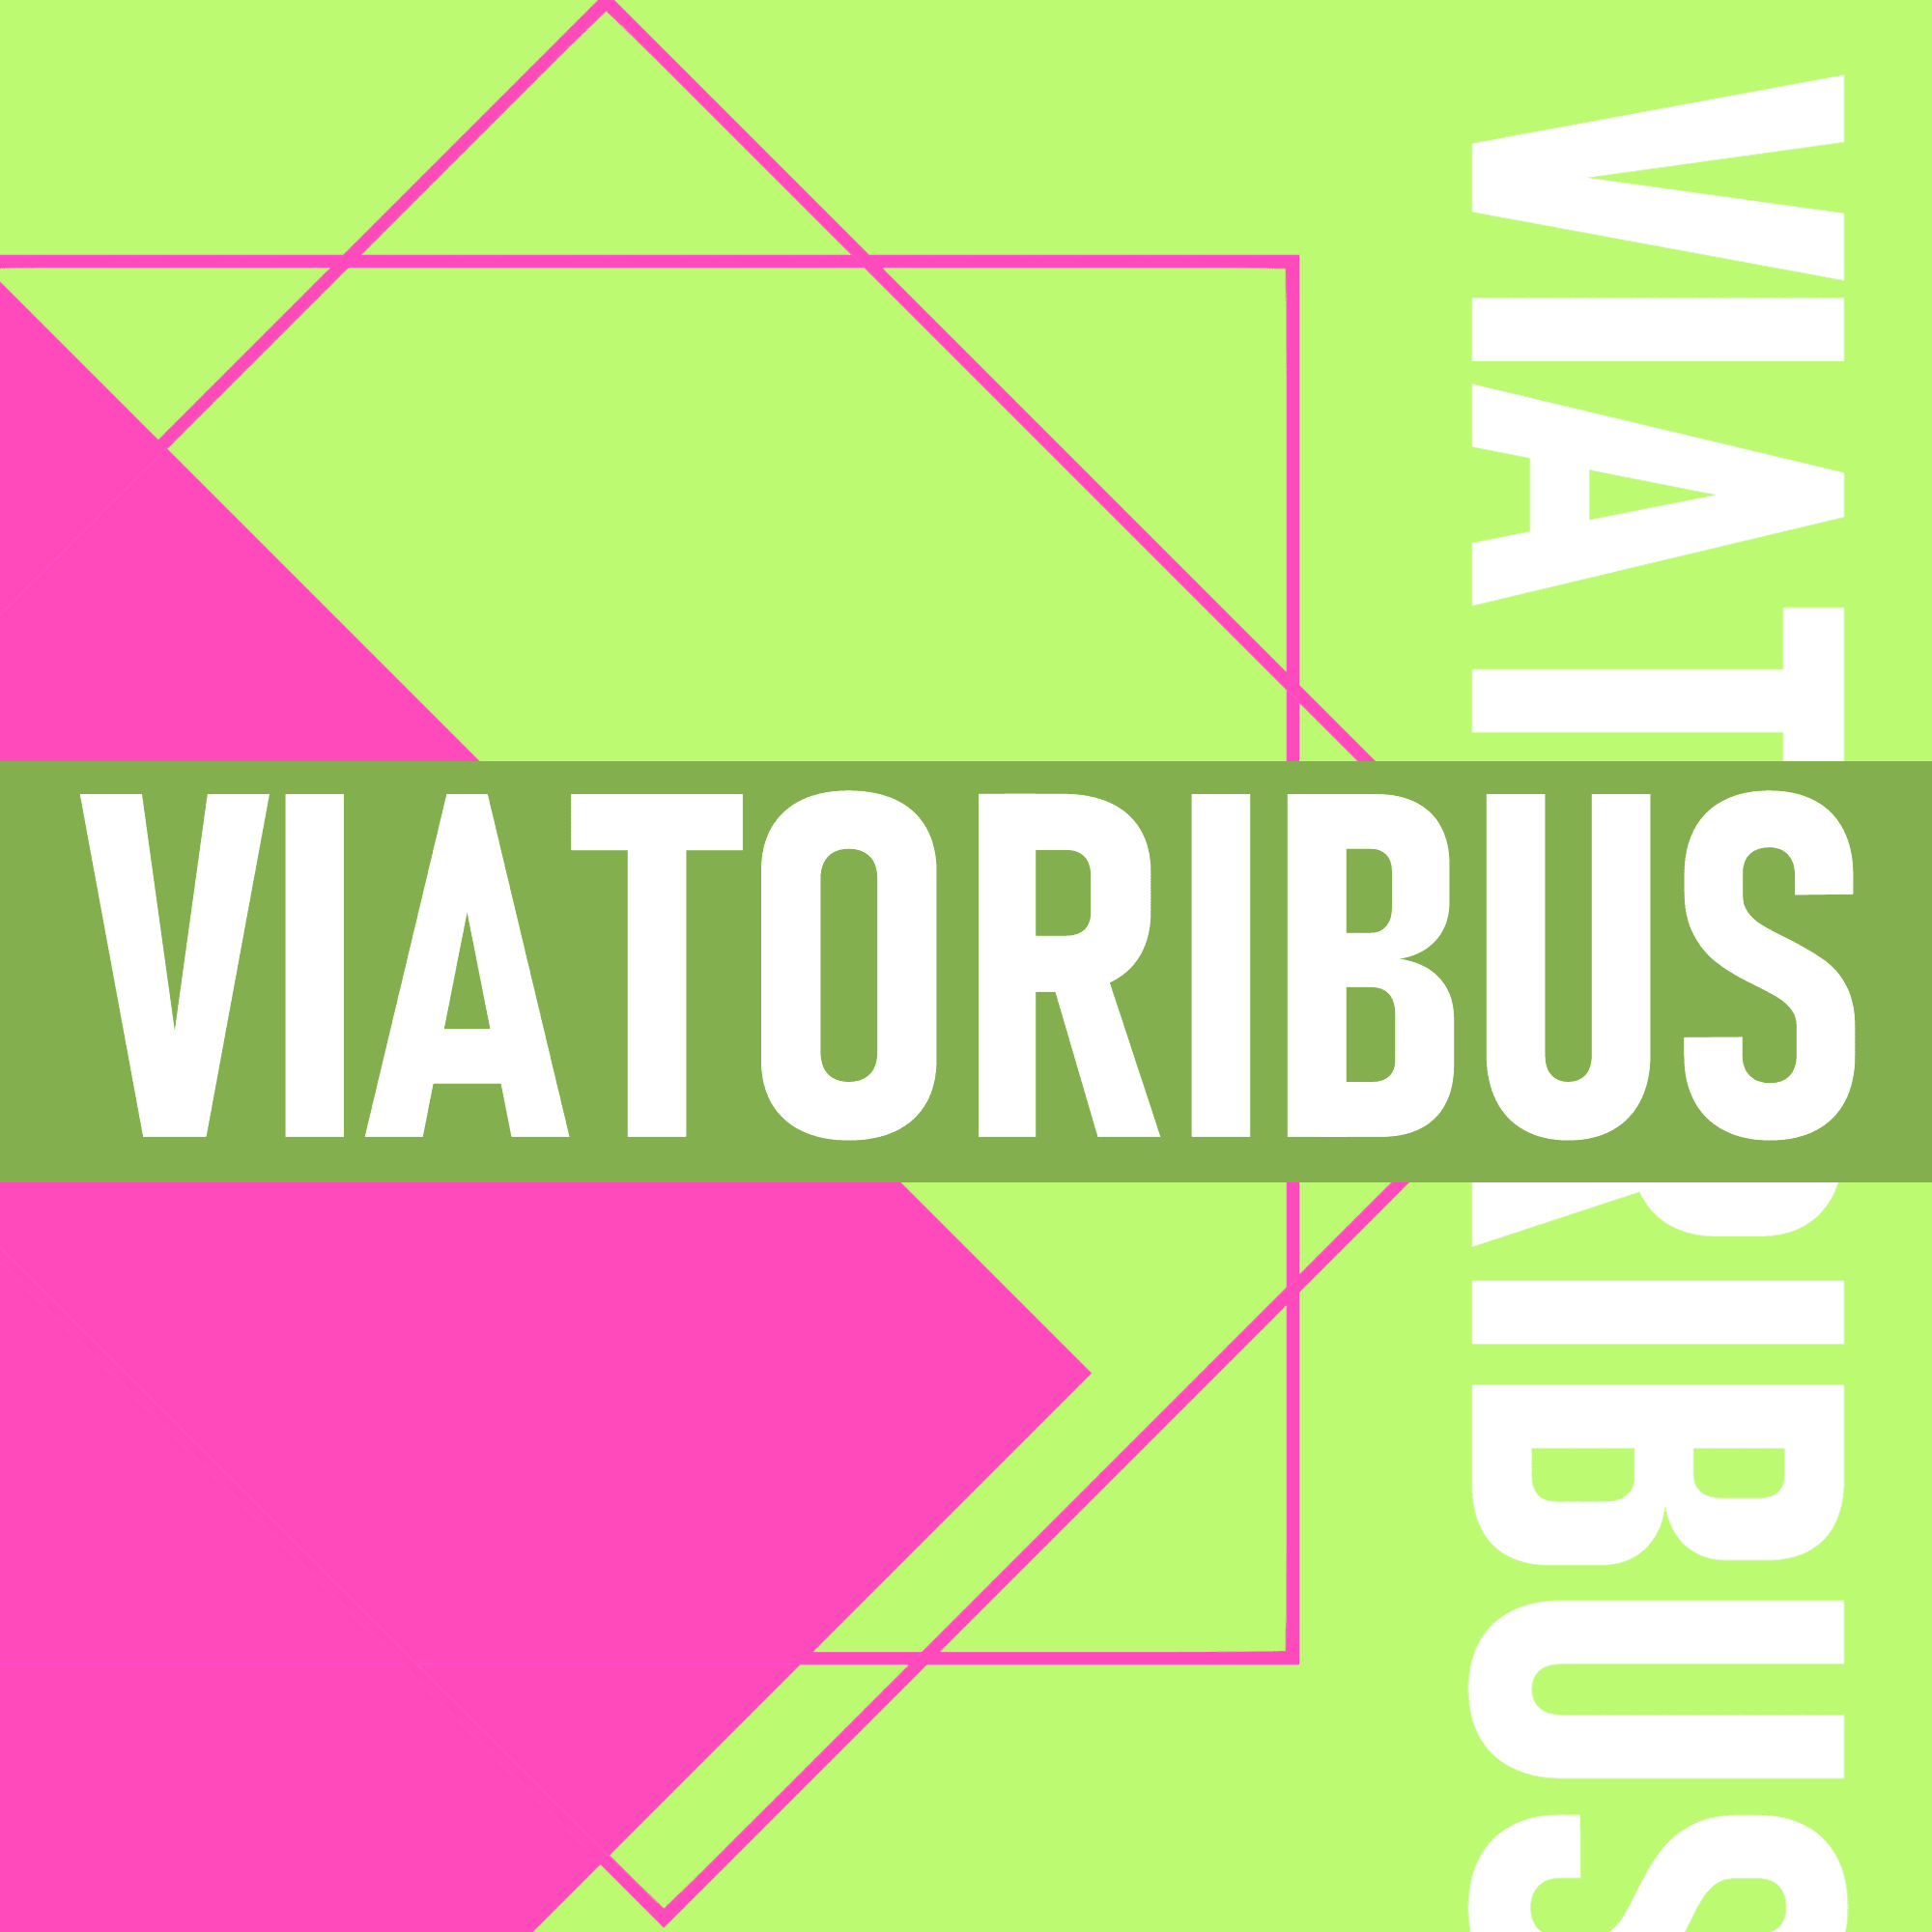 Viatoribus